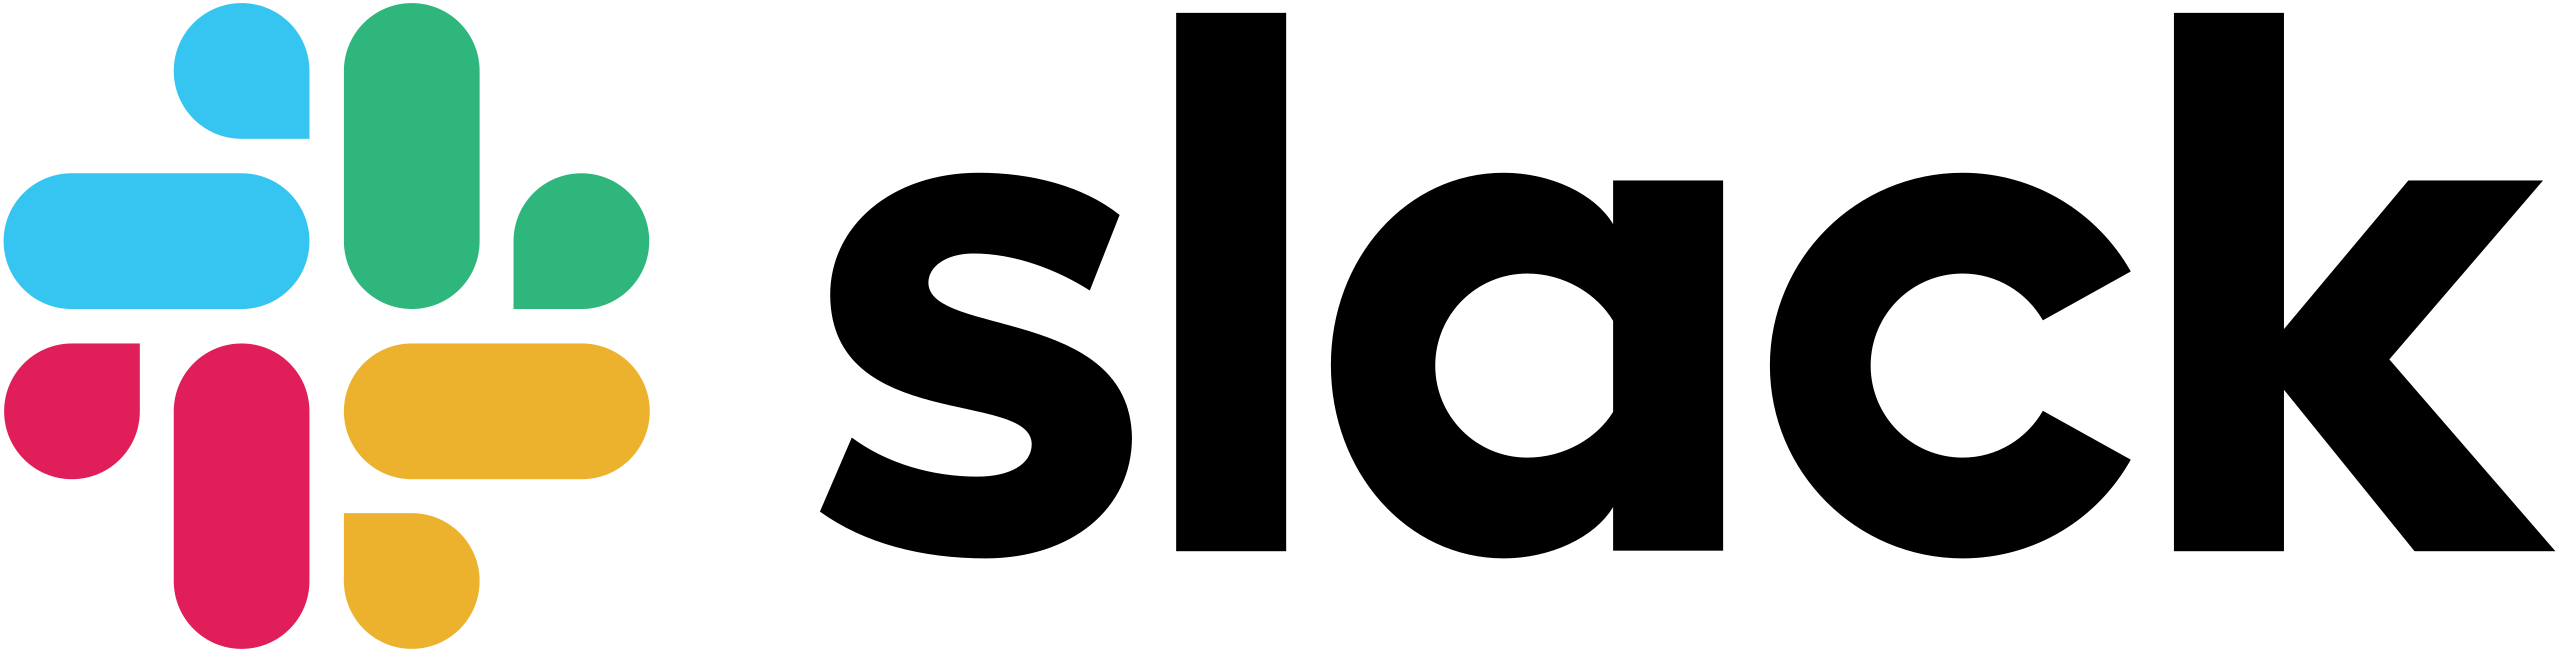 Slack logo from Wikimedia Commons